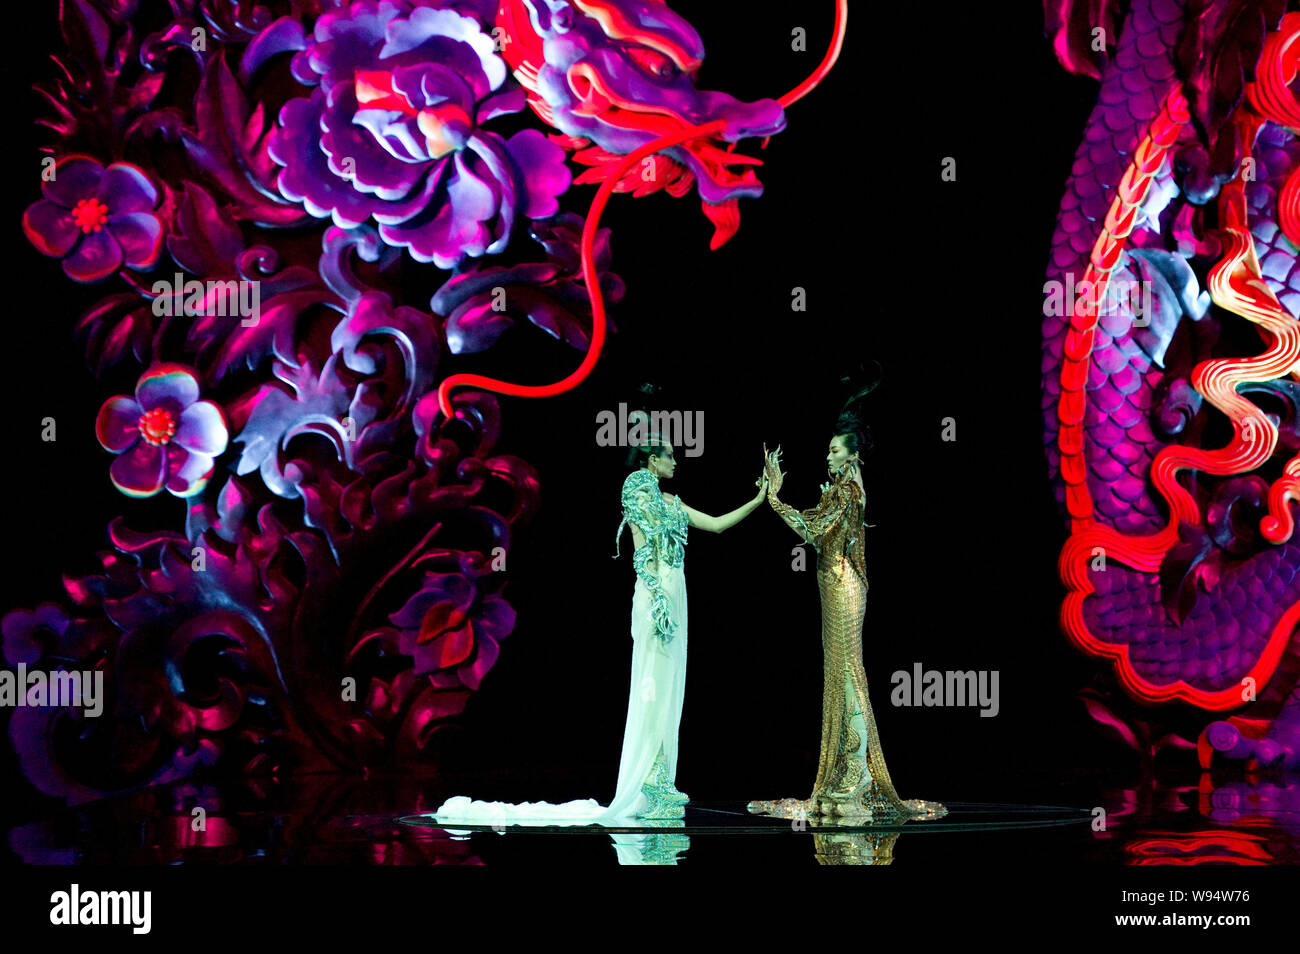 Présenter des modèles de créations de designer Guo Pei au fashion show, épouses de Chinois, Dragons Story, à Beijing, Chine, 6 mai 2012. Banque D'Images